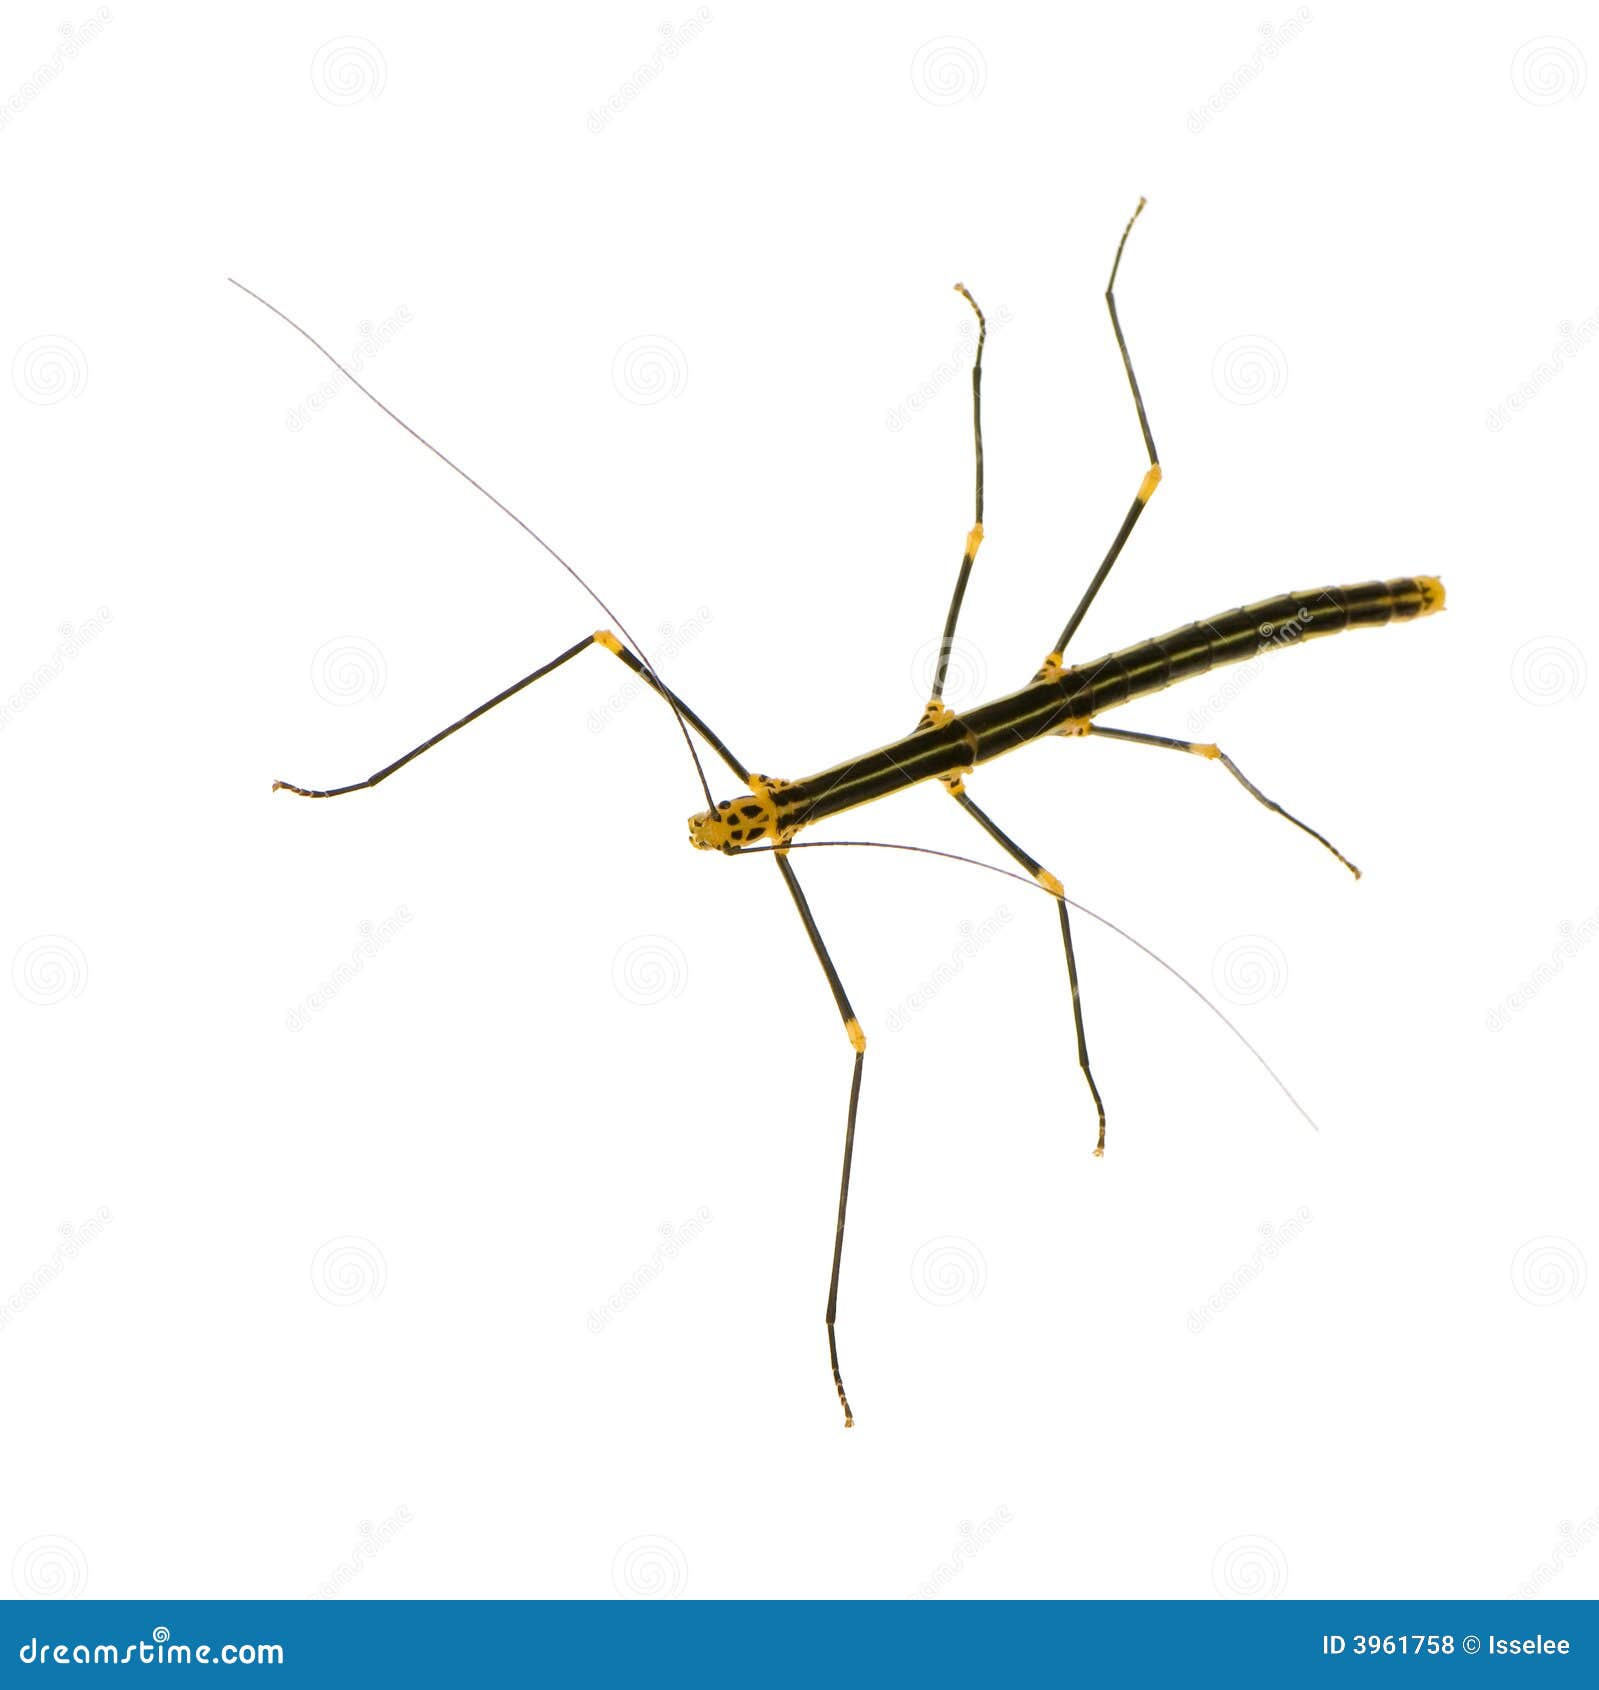 stick insect, phasmatodea - oreophoetes peruana